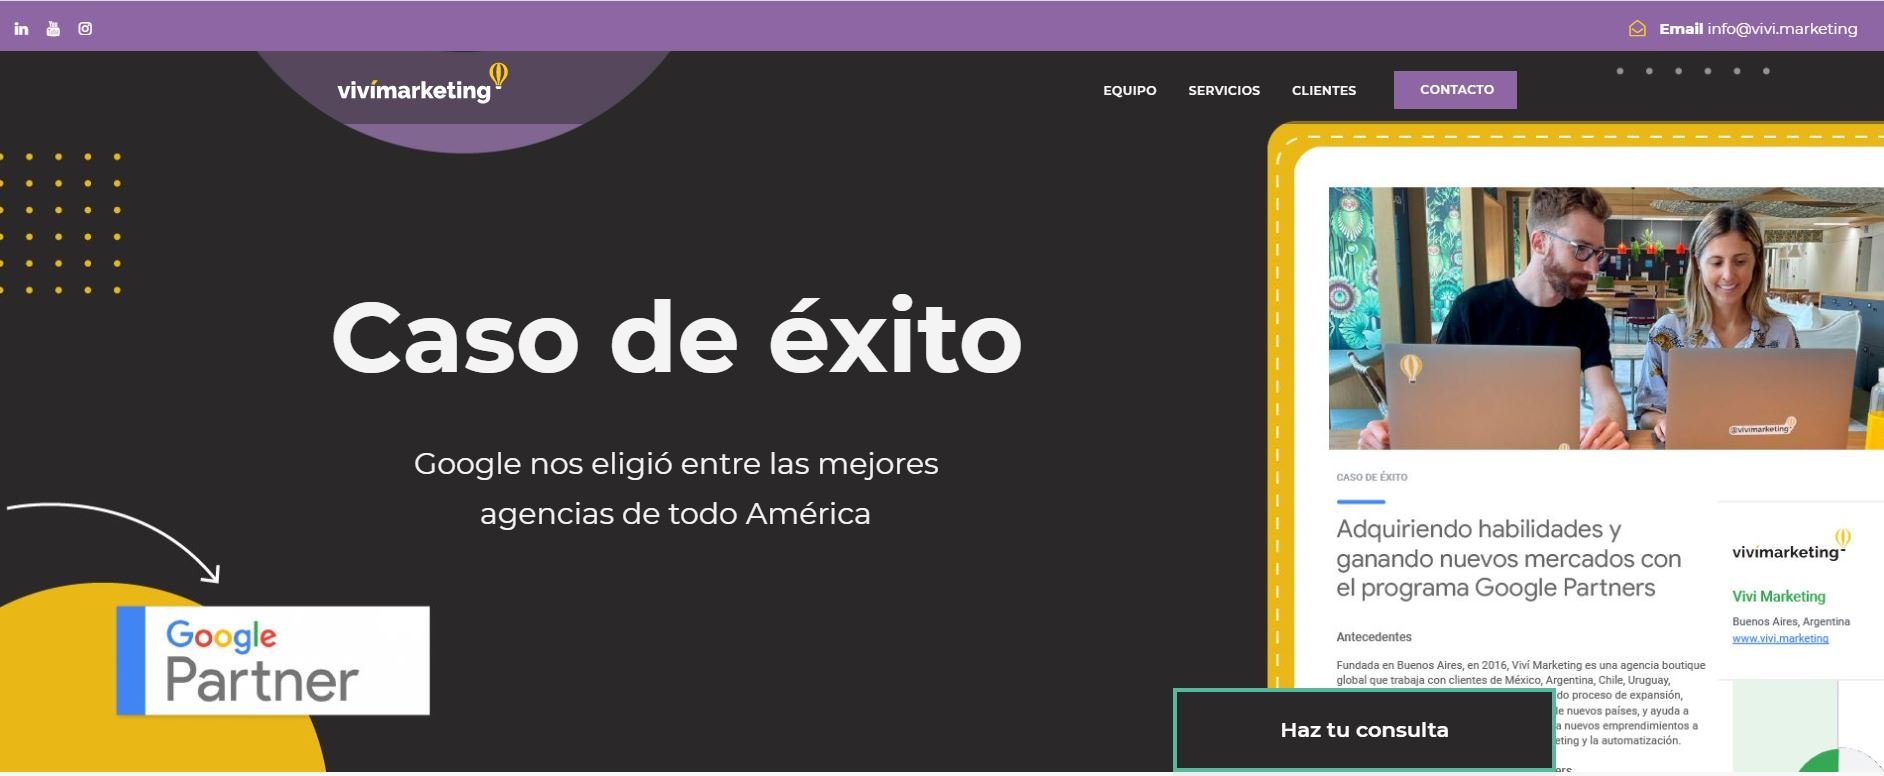 Viví Marketing - Mejores agencias de Marketing Digital en Argentina